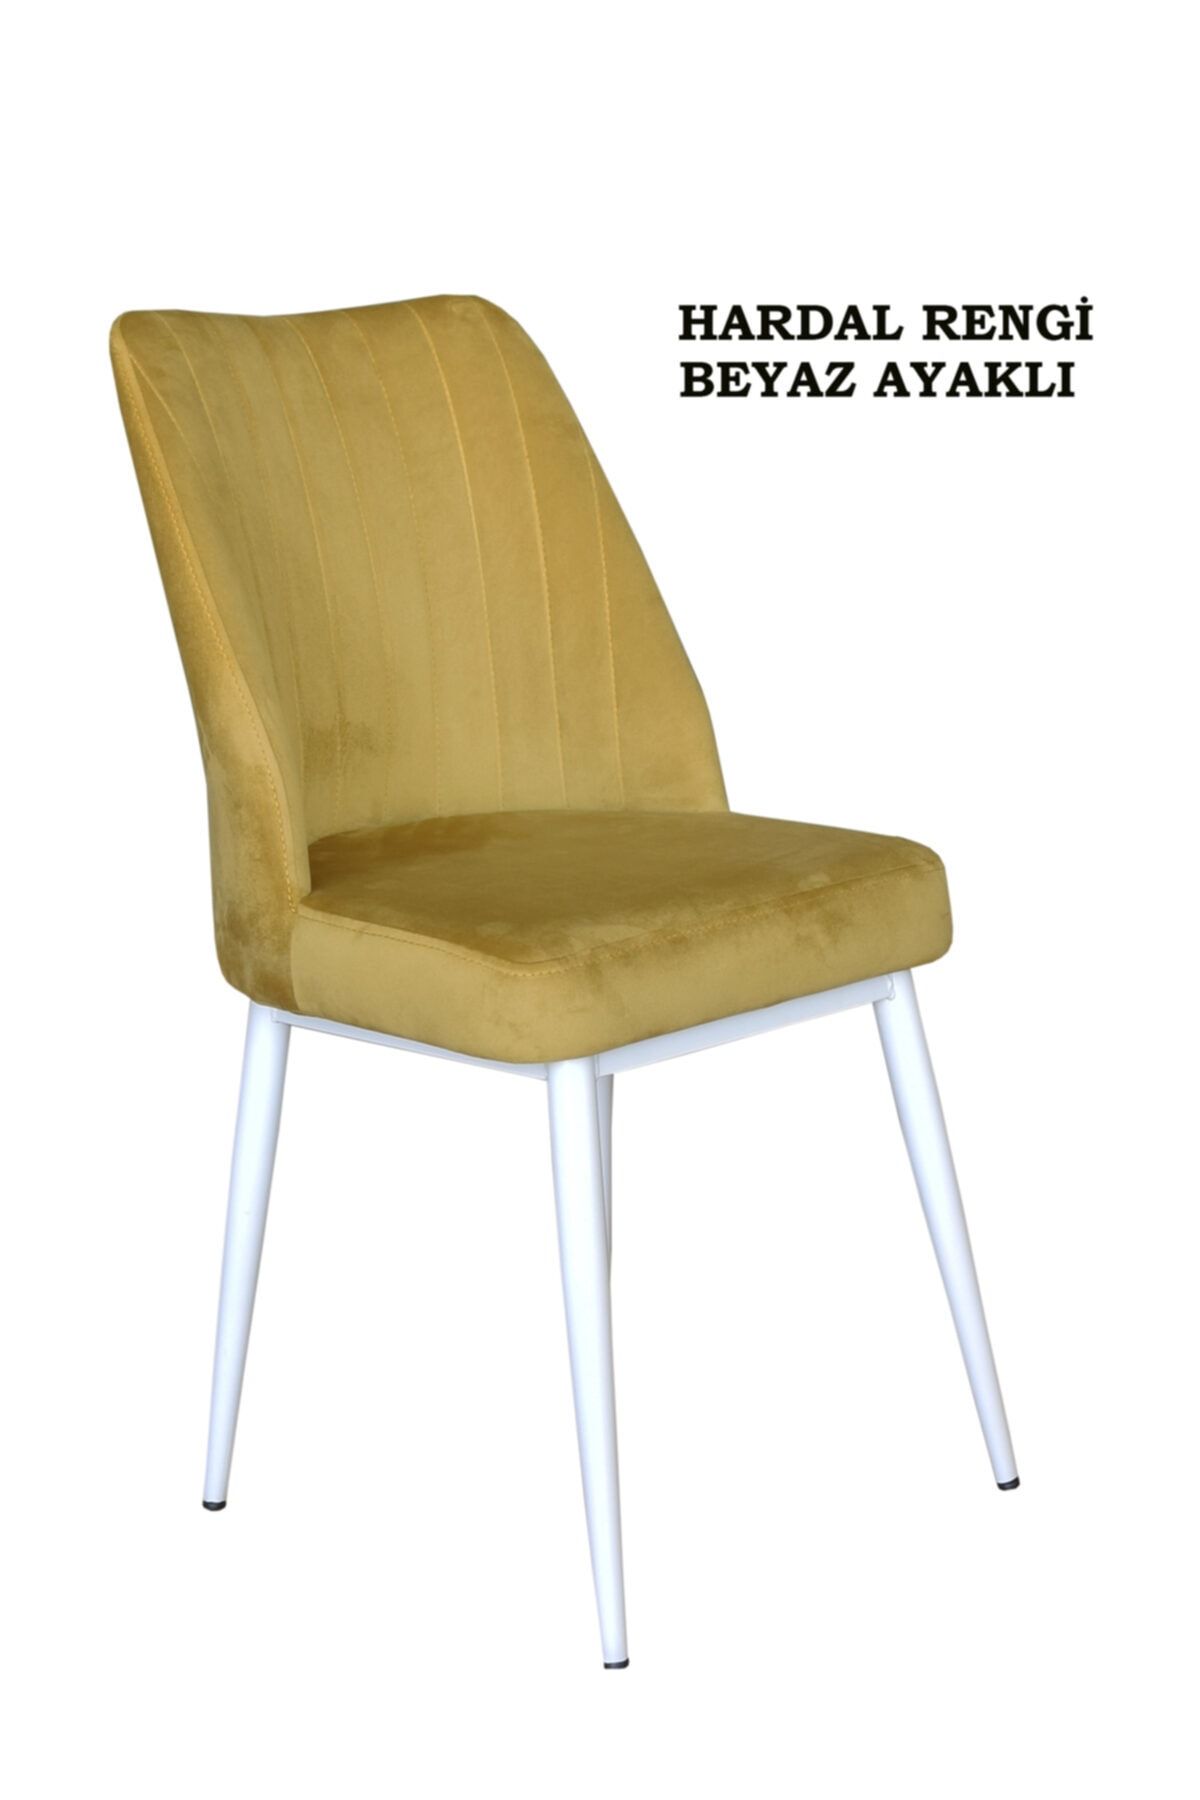 Ankhira Elit Sandalye, Mutfak Ve Salon Sandalyesi, Silinebilir Hardal Renk Kumaş, Beyaz Ayaklı